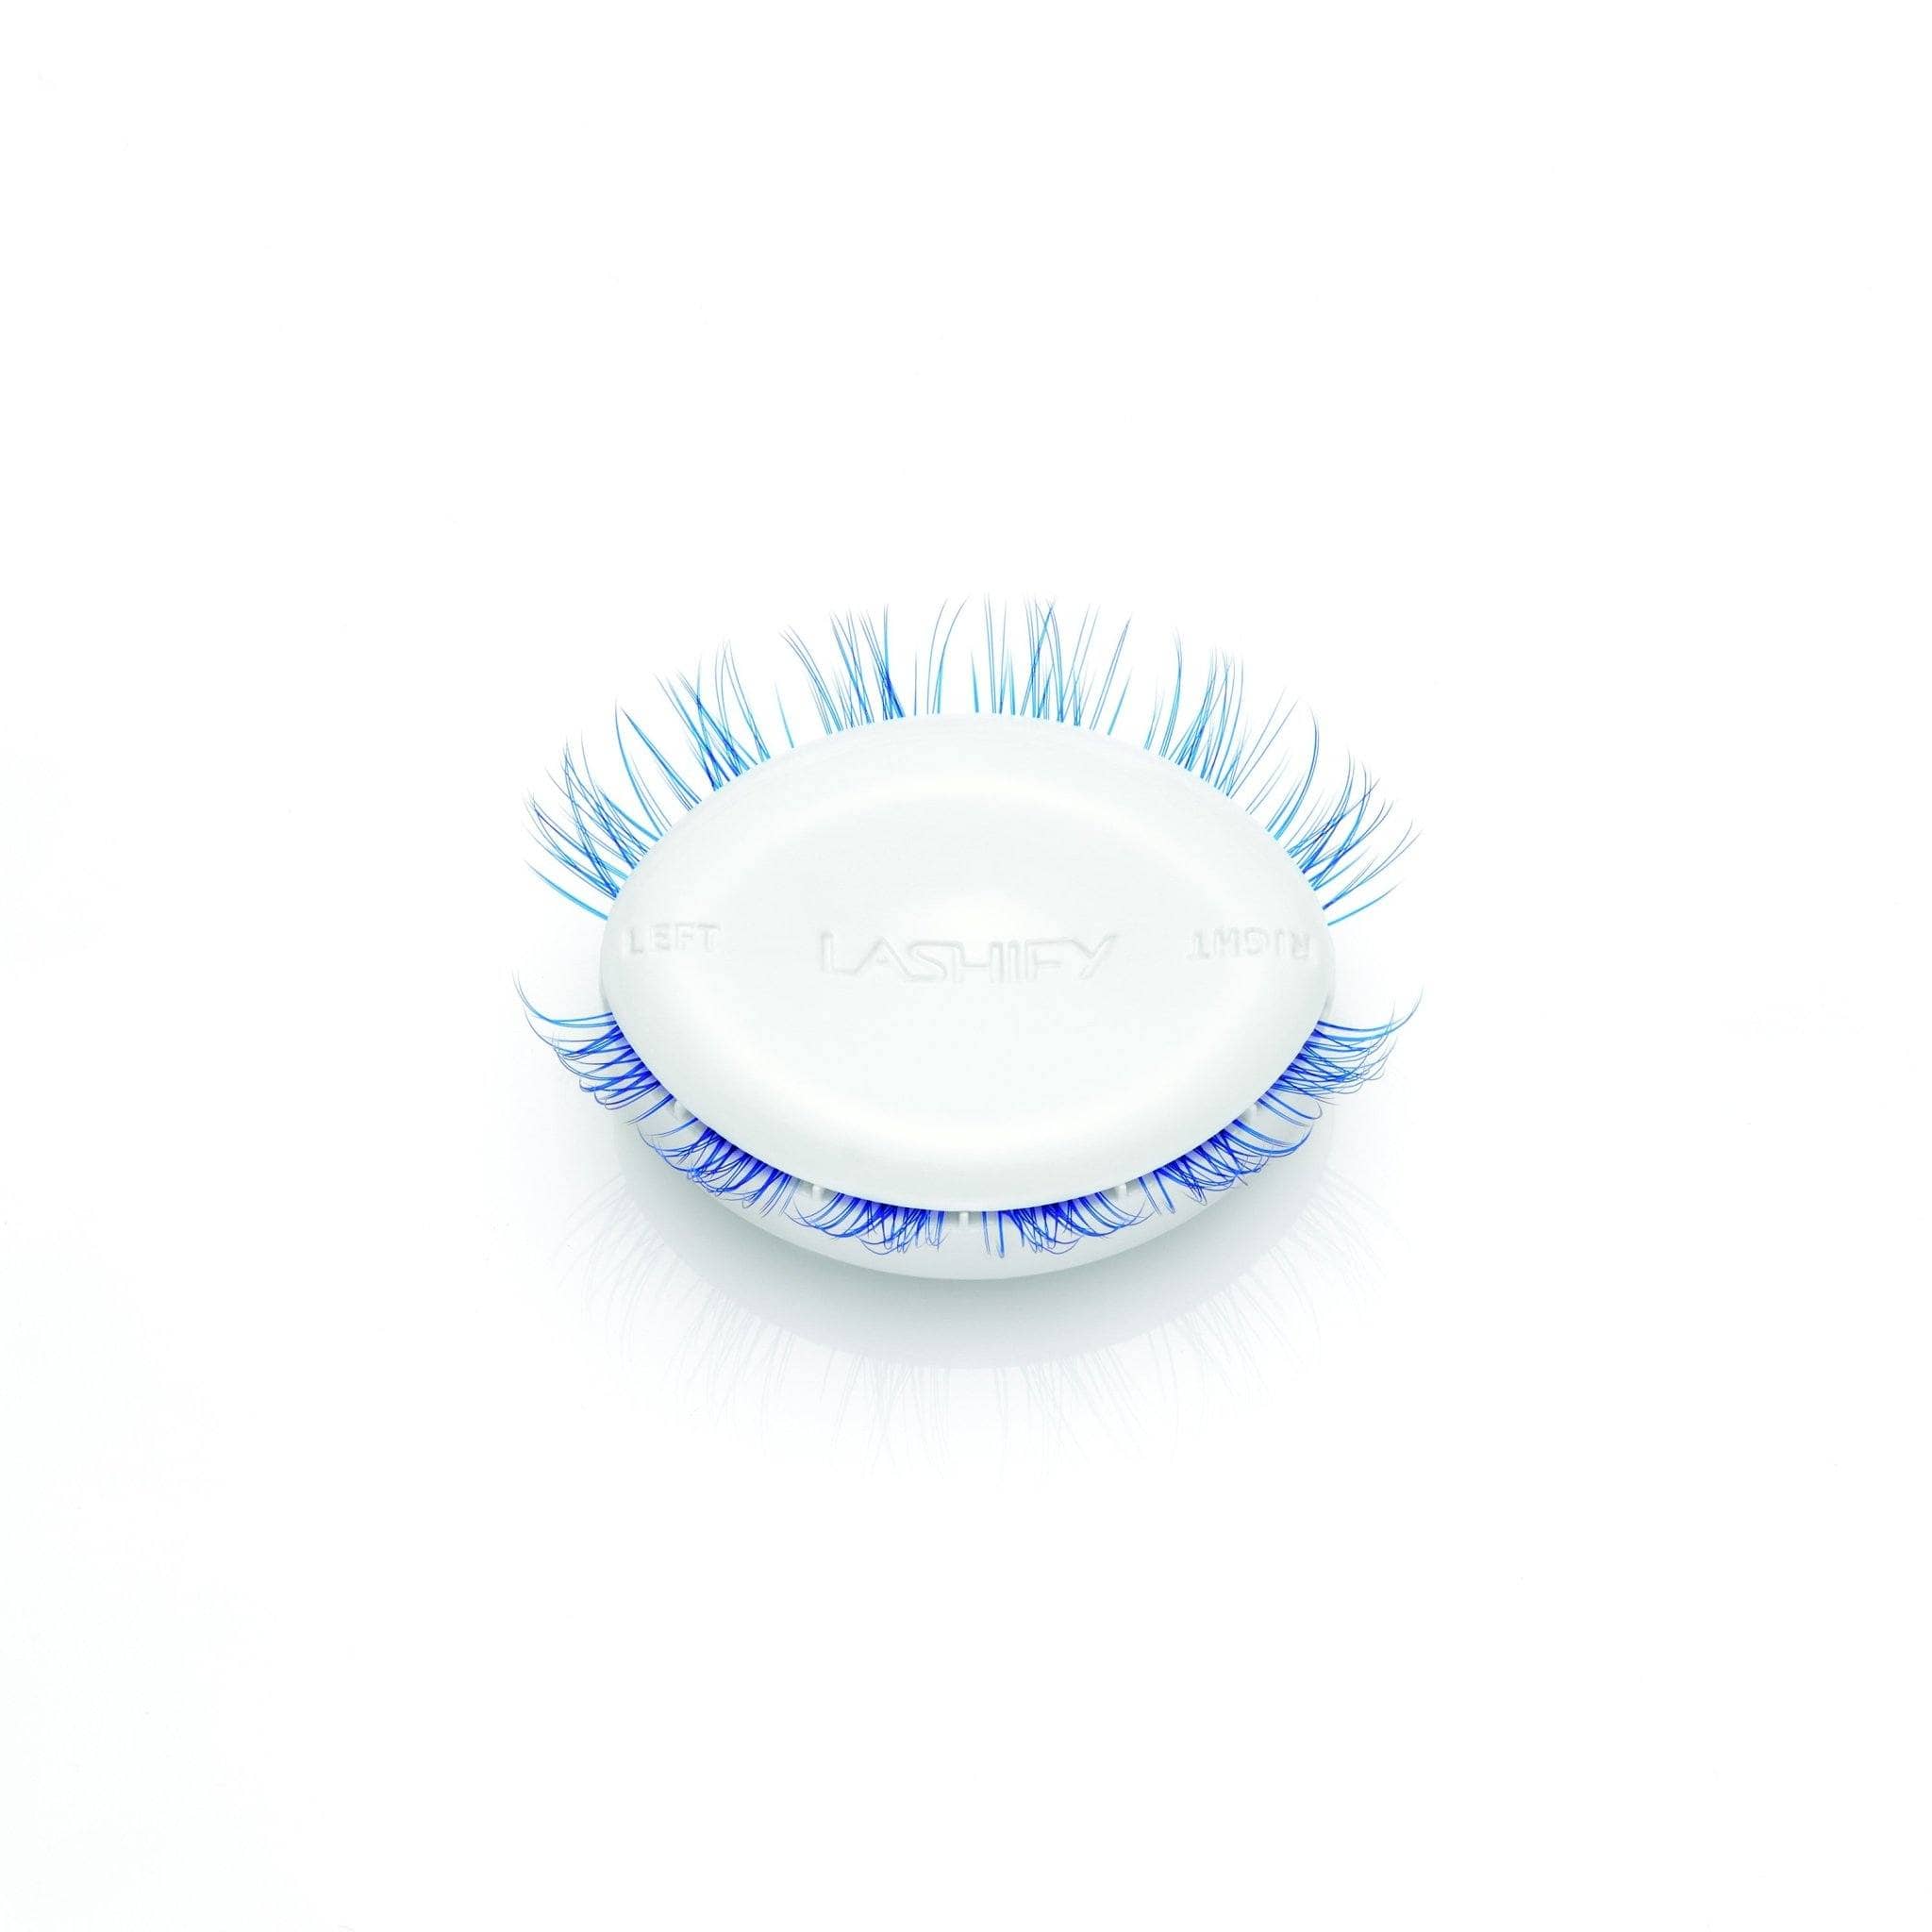 Prismatics Gossamer® Royal Kim Blue Lashes Gossamer Lash Sets Lashify C12 - Medium 12mm 